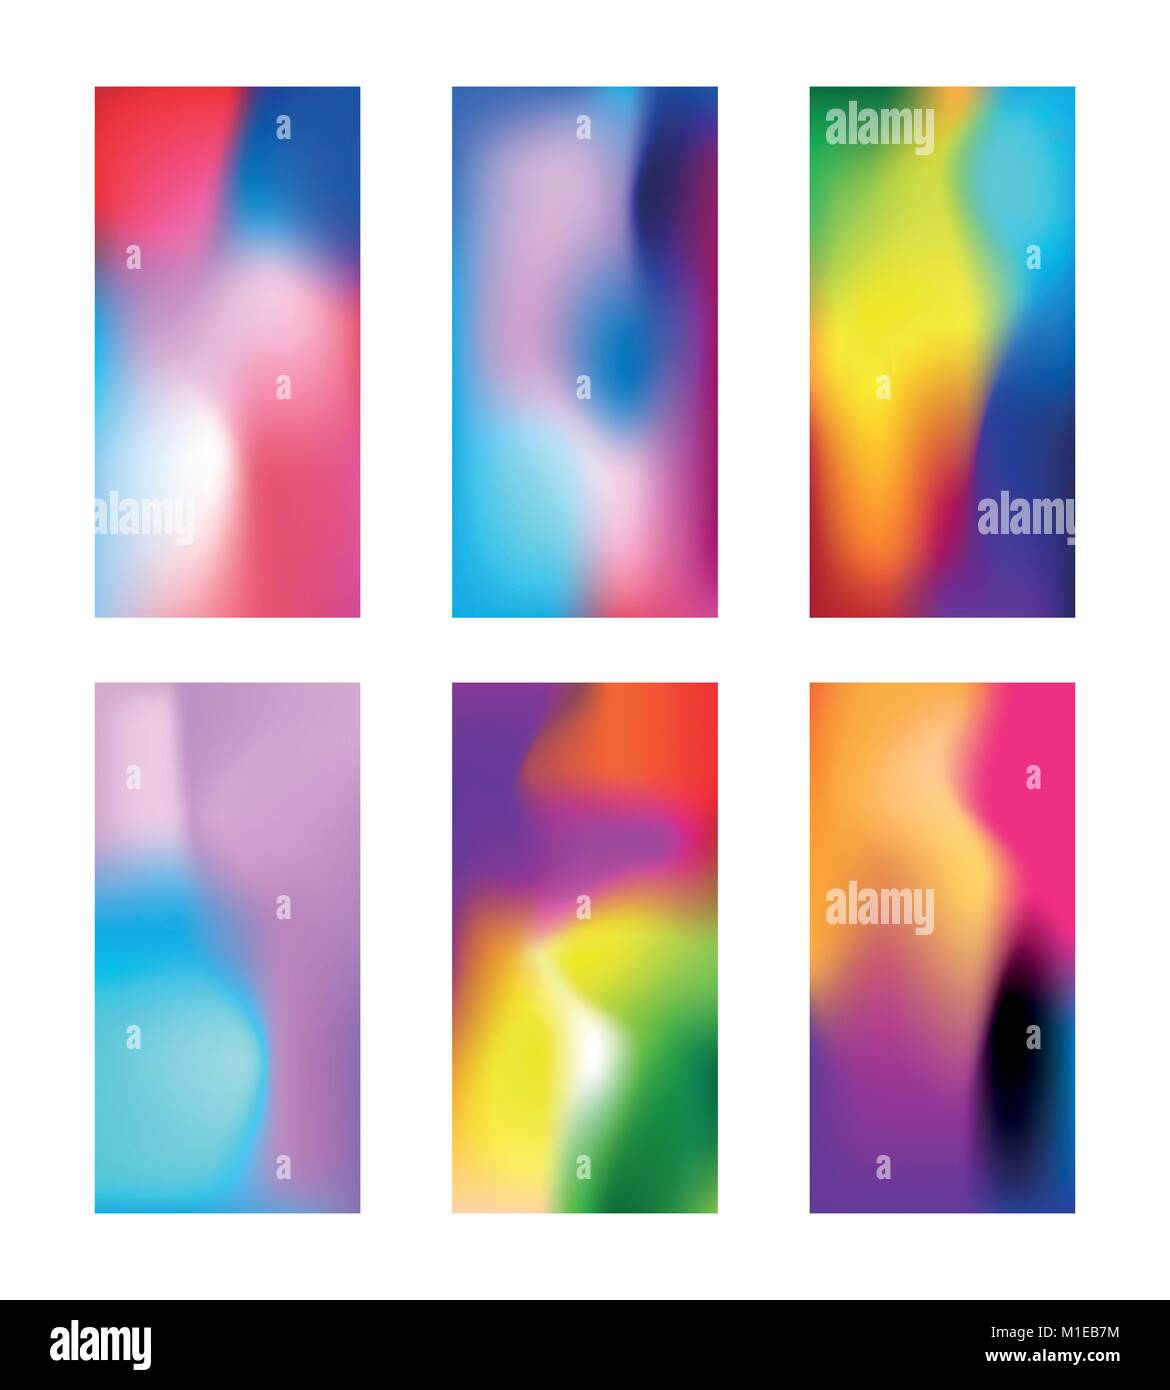 Moderne farbige Hintergrundbilder. Elegante verschwommen Telefon Hintergrund mit Farbverlauf mesh. Tiefe Multicolor wallpaper für Smartphone. Vector Illustration Stock Vektor